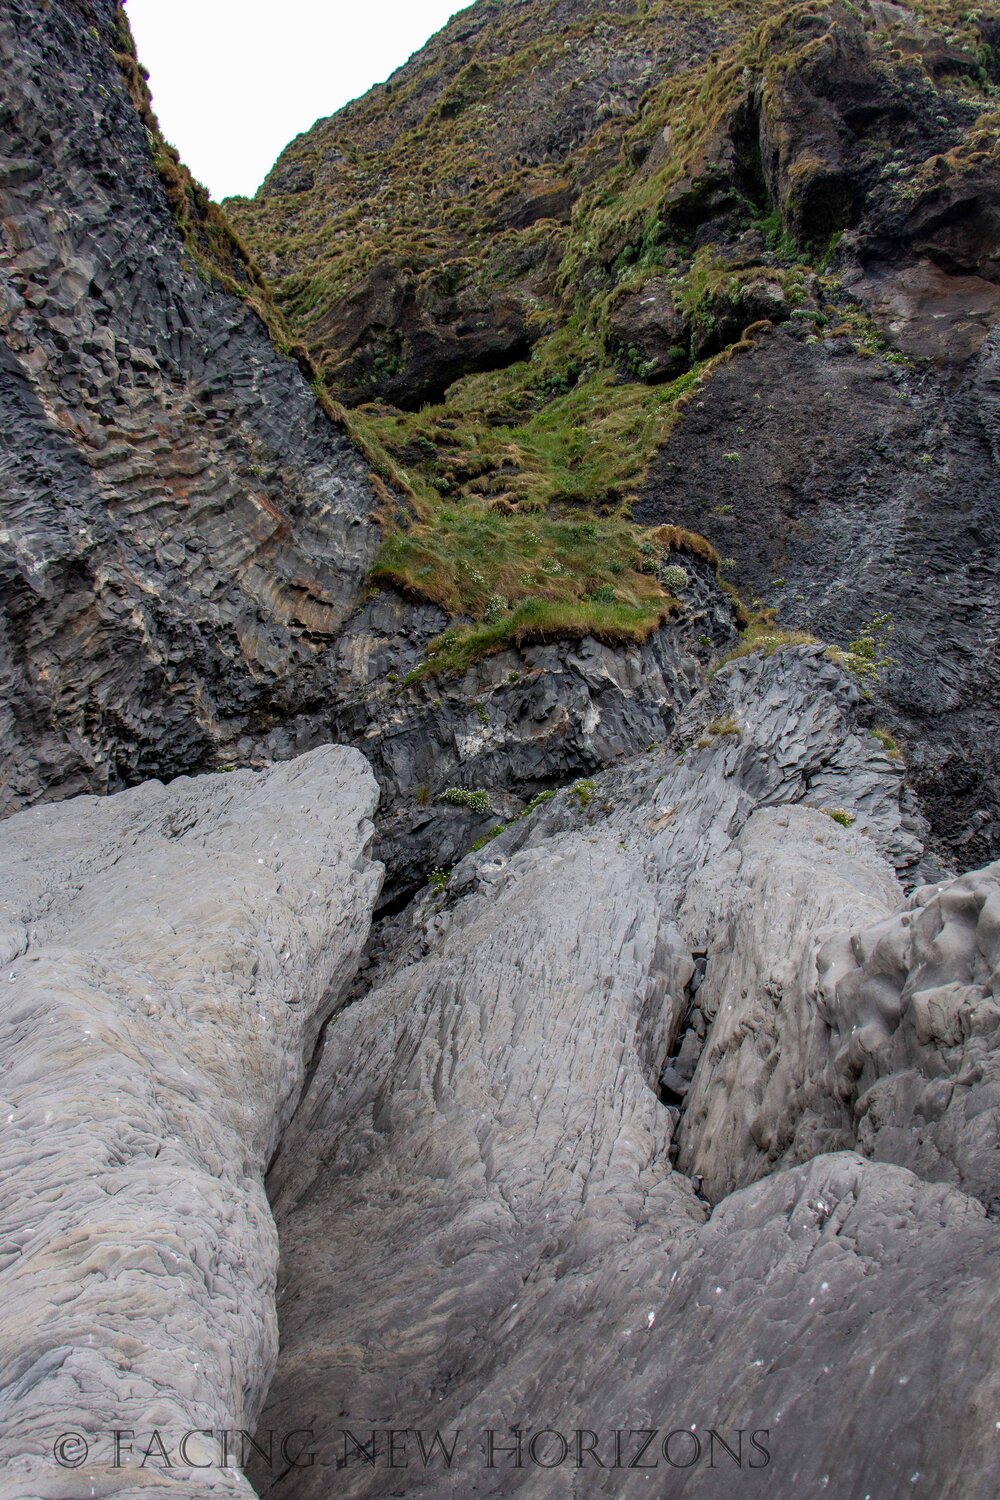  Rock formations at Reynisfjara  